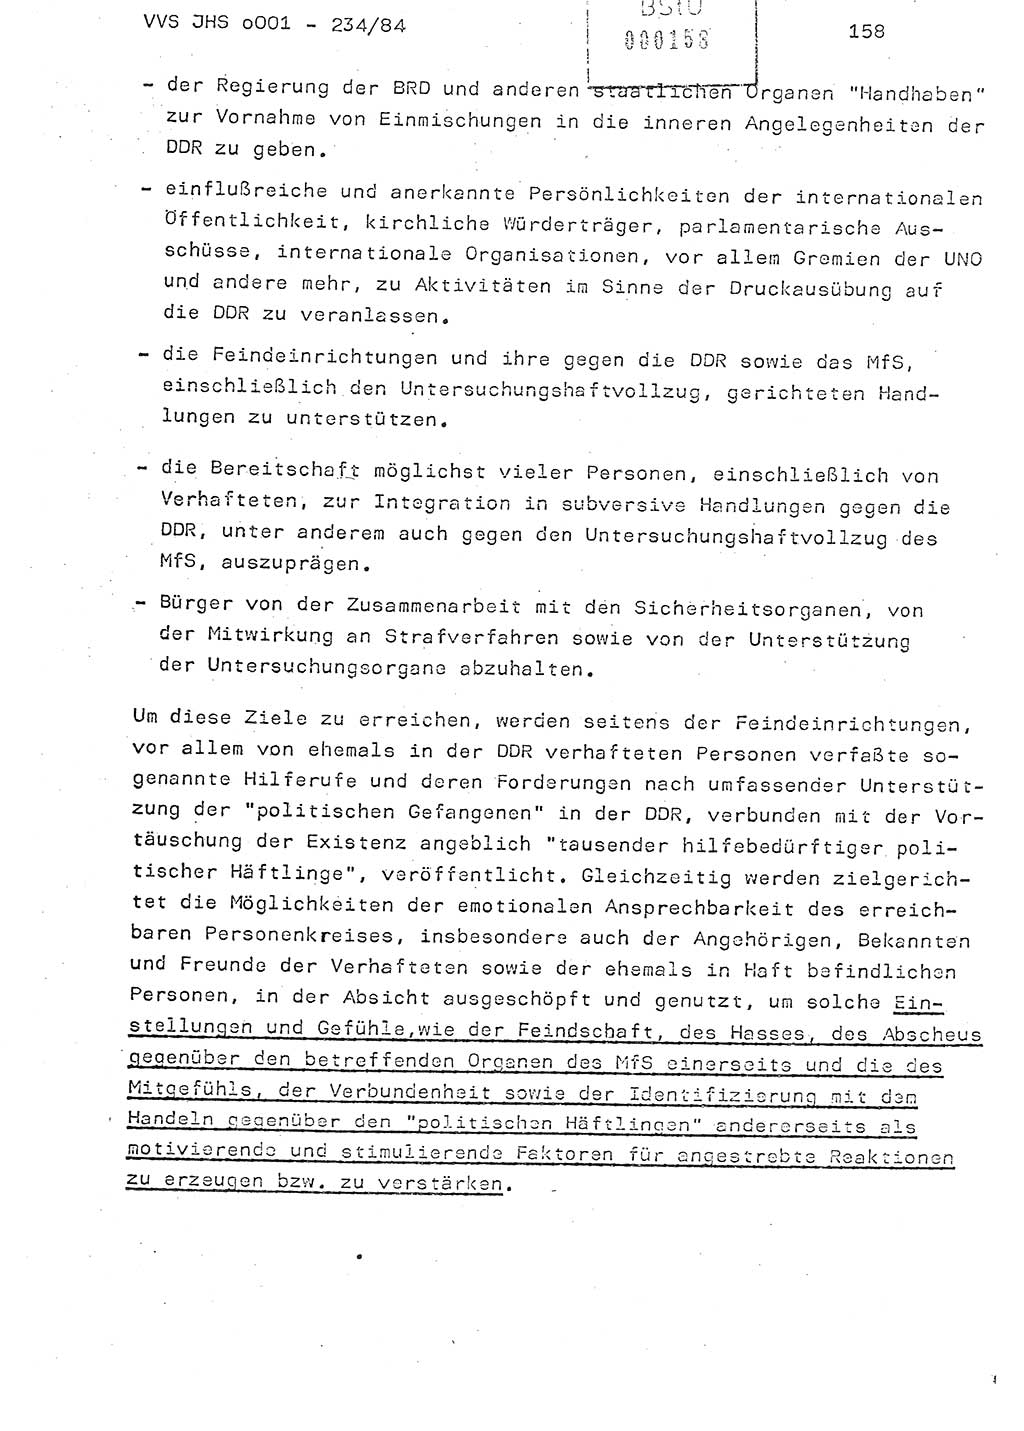 Dissertation Oberst Siegfried Rataizick (Abt. ⅩⅣ), Oberstleutnant Volkmar Heinz (Abt. ⅩⅣ), Oberstleutnant Werner Stein (HA Ⅸ), Hauptmann Heinz Conrad (JHS), Ministerium für Staatssicherheit (MfS) [Deutsche Demokratische Republik (DDR)], Juristische Hochschule (JHS), Vertrauliche Verschlußsache (VVS) o001-234/84, Potsdam 1984, Seite 158 (Diss. MfS DDR JHS VVS o001-234/84 1984, S. 158)